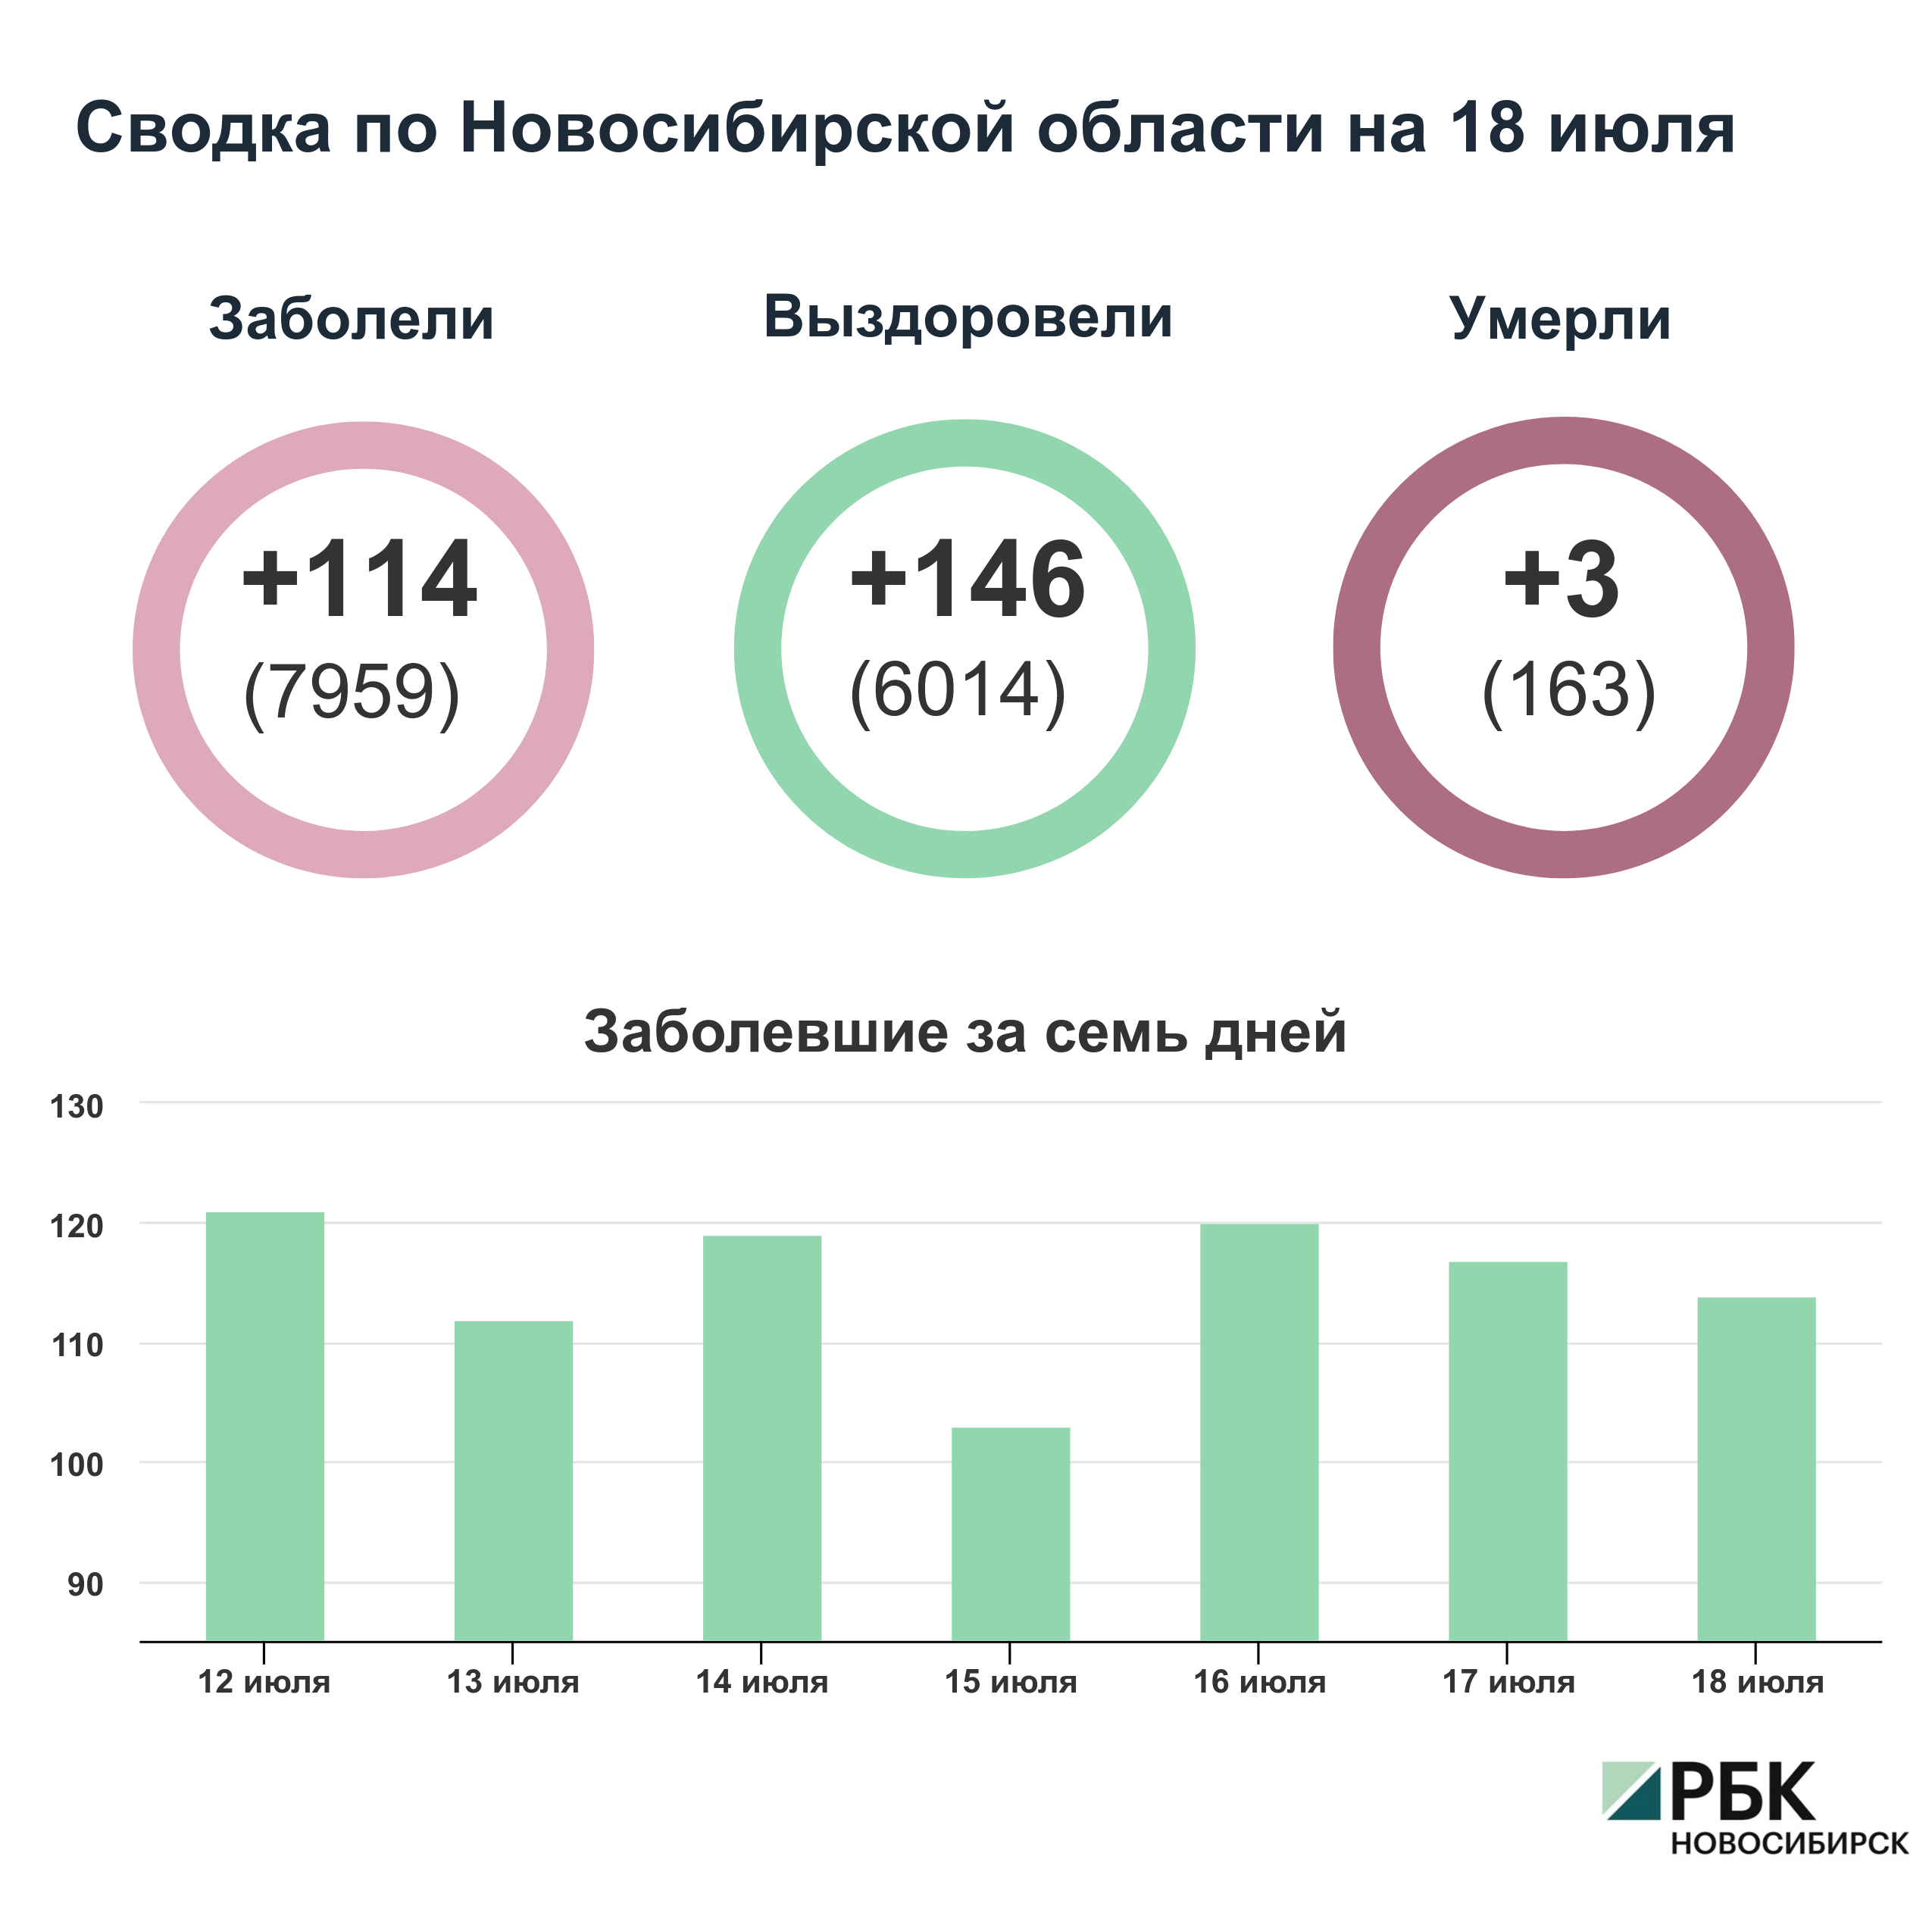 Коронавирус в Новосибирске: сводка на 18 июля